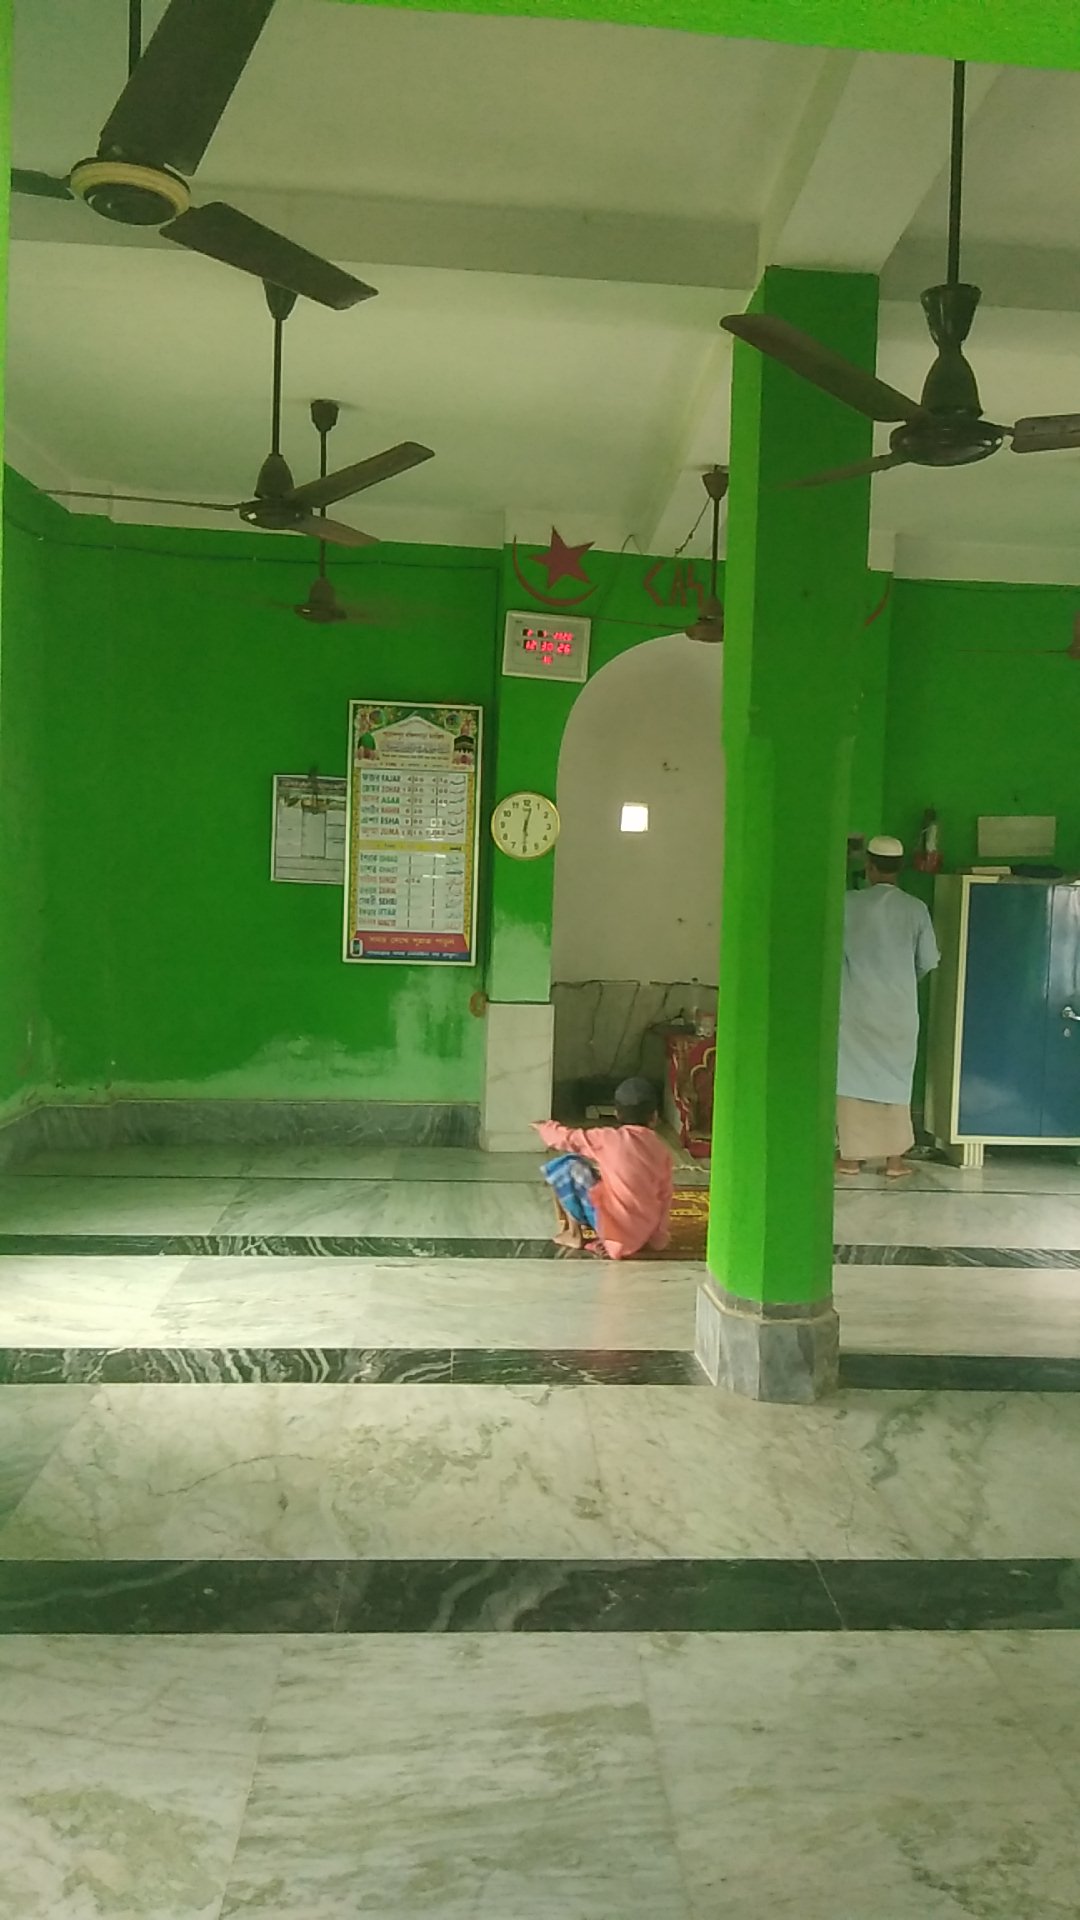 purandarpur Dakshinpara Hanafia jame masjid